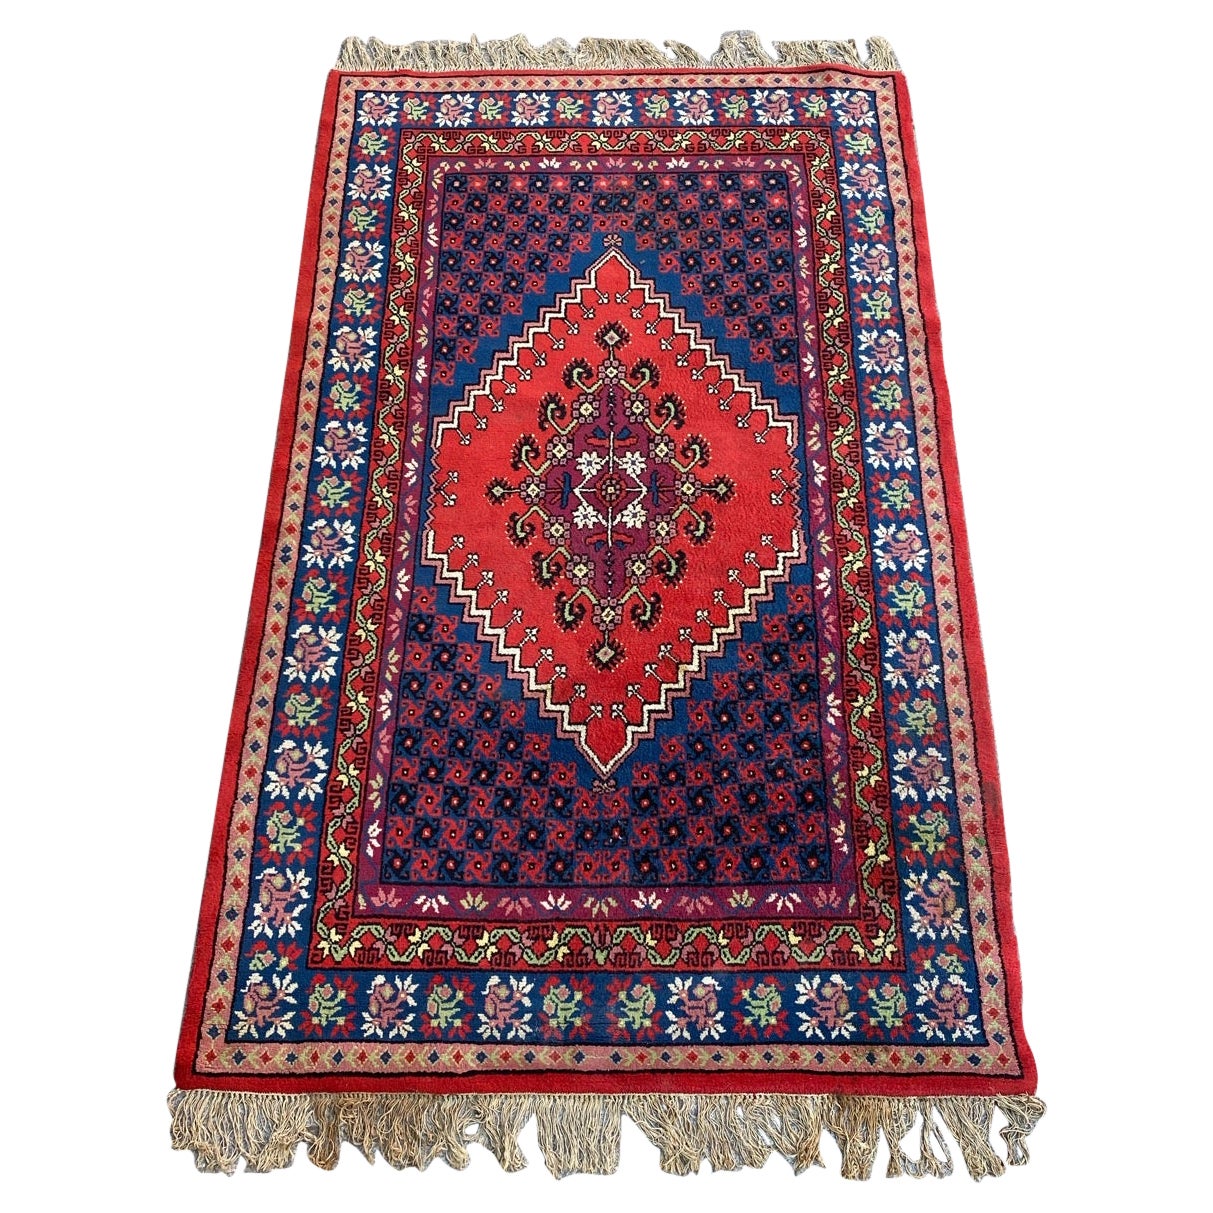 Le joli tapis tunisien vintage de Bobyrug